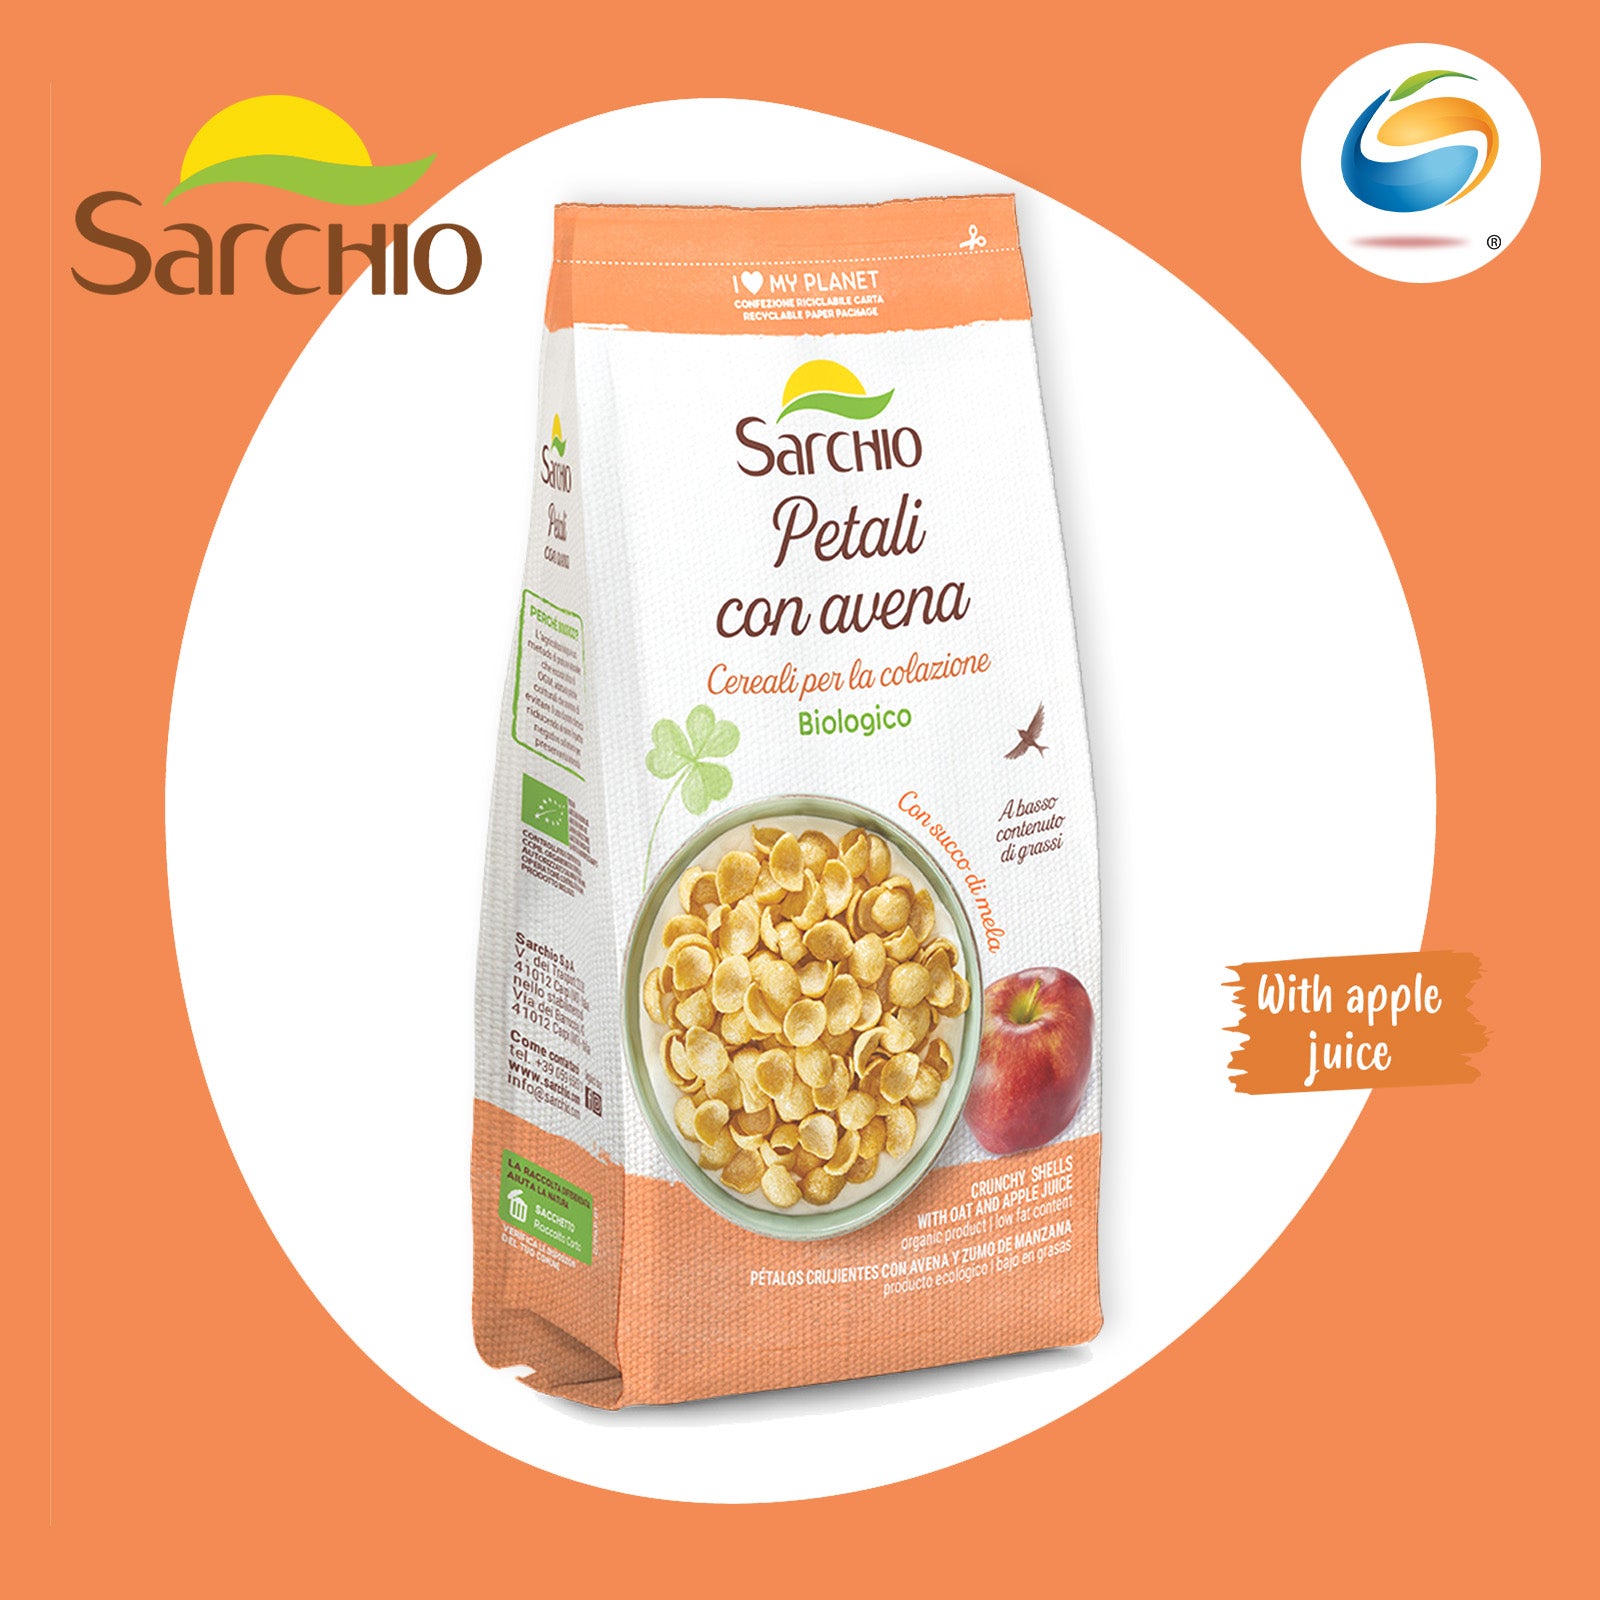 SARCHIO Organic Cereals